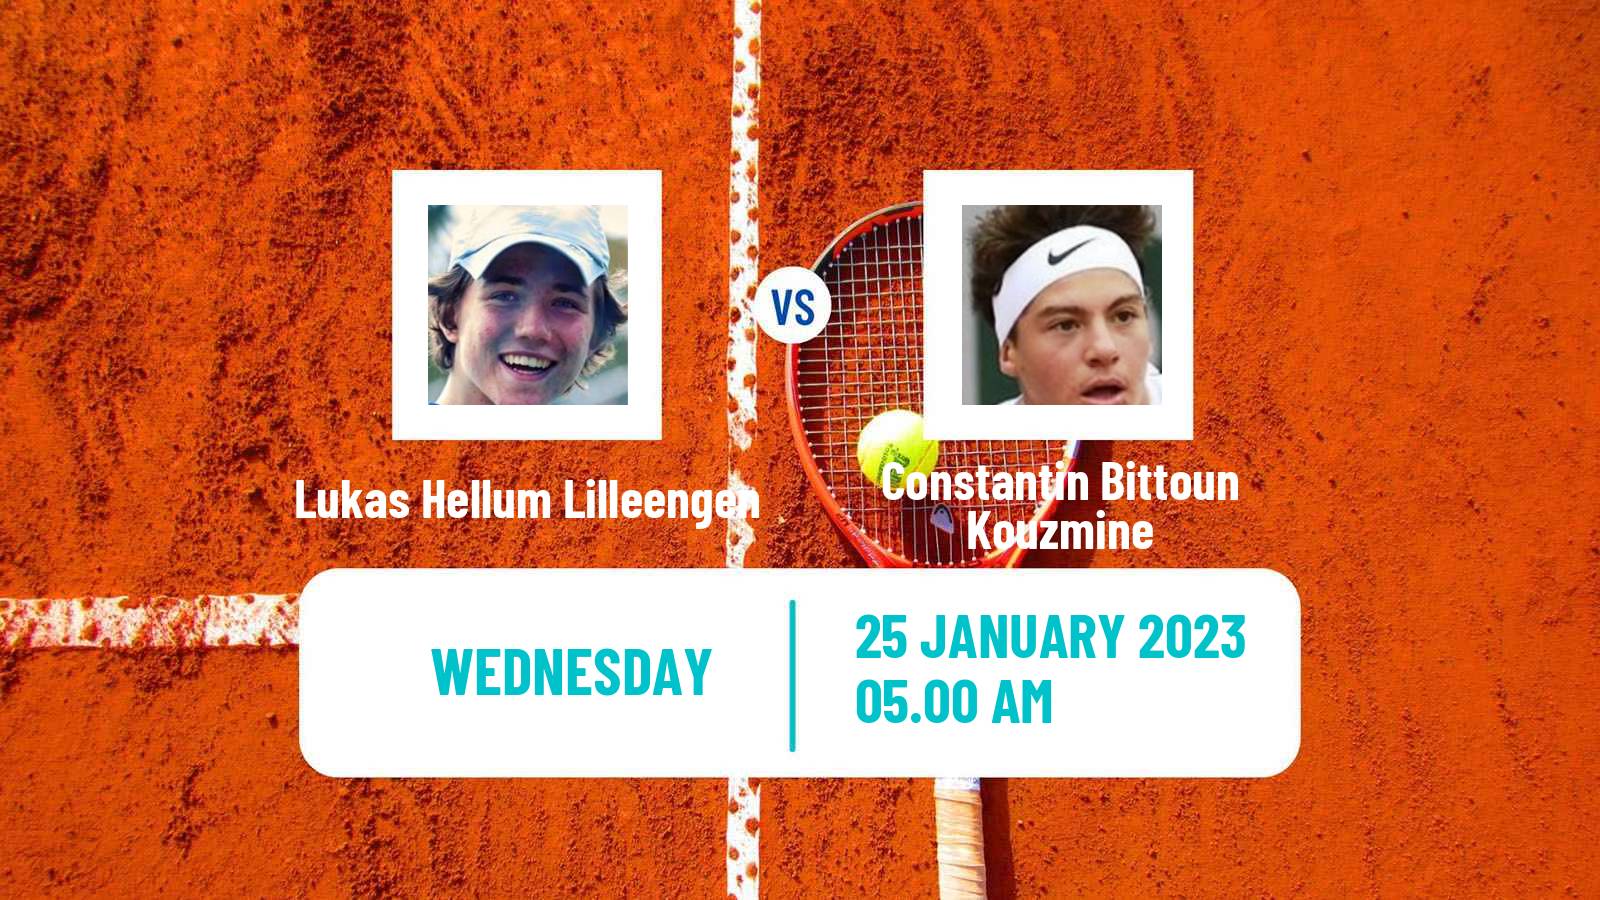 Tennis ITF Tournaments Lukas Hellum Lilleengen - Constantin Bittoun Kouzmine